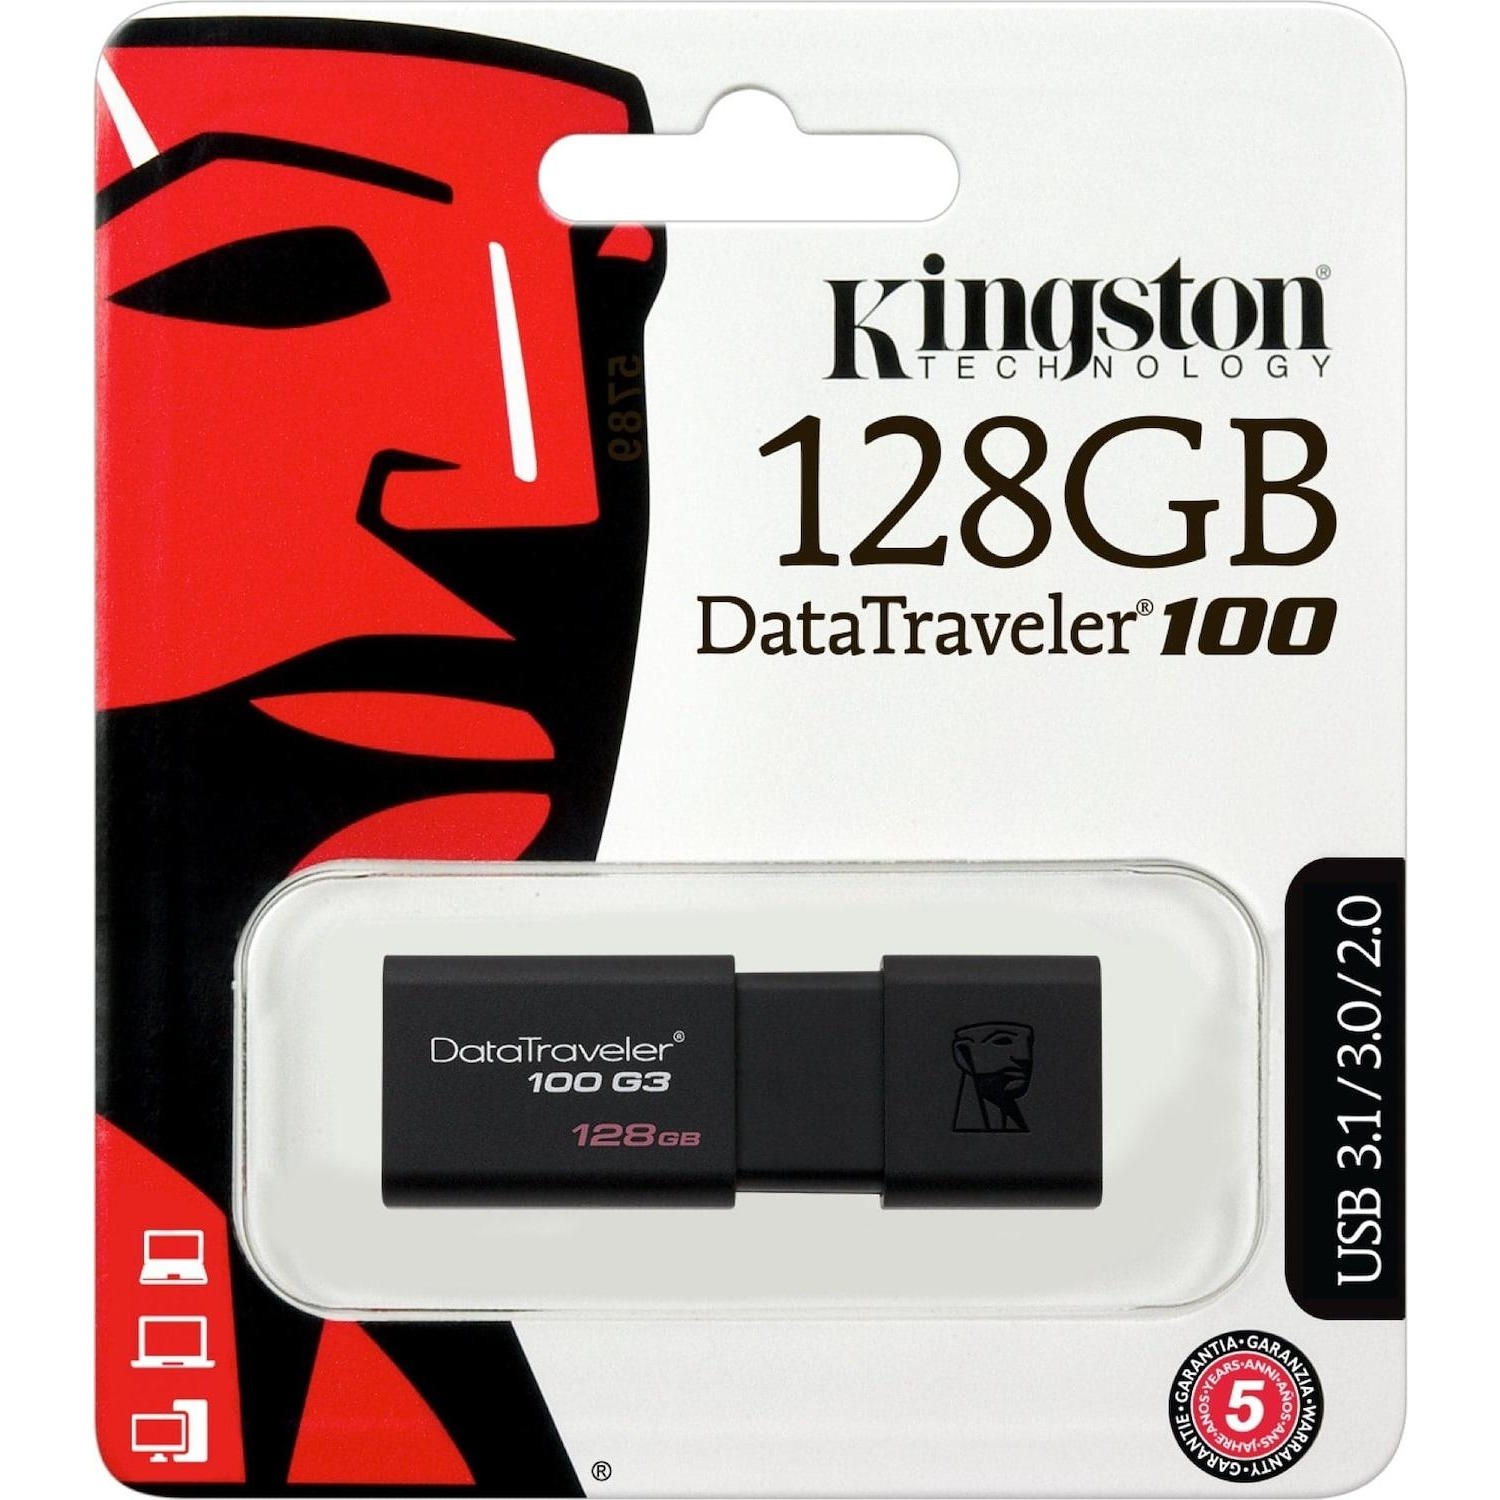 Immagine per Memoria USB Kingston 128 GB da DIMOStore